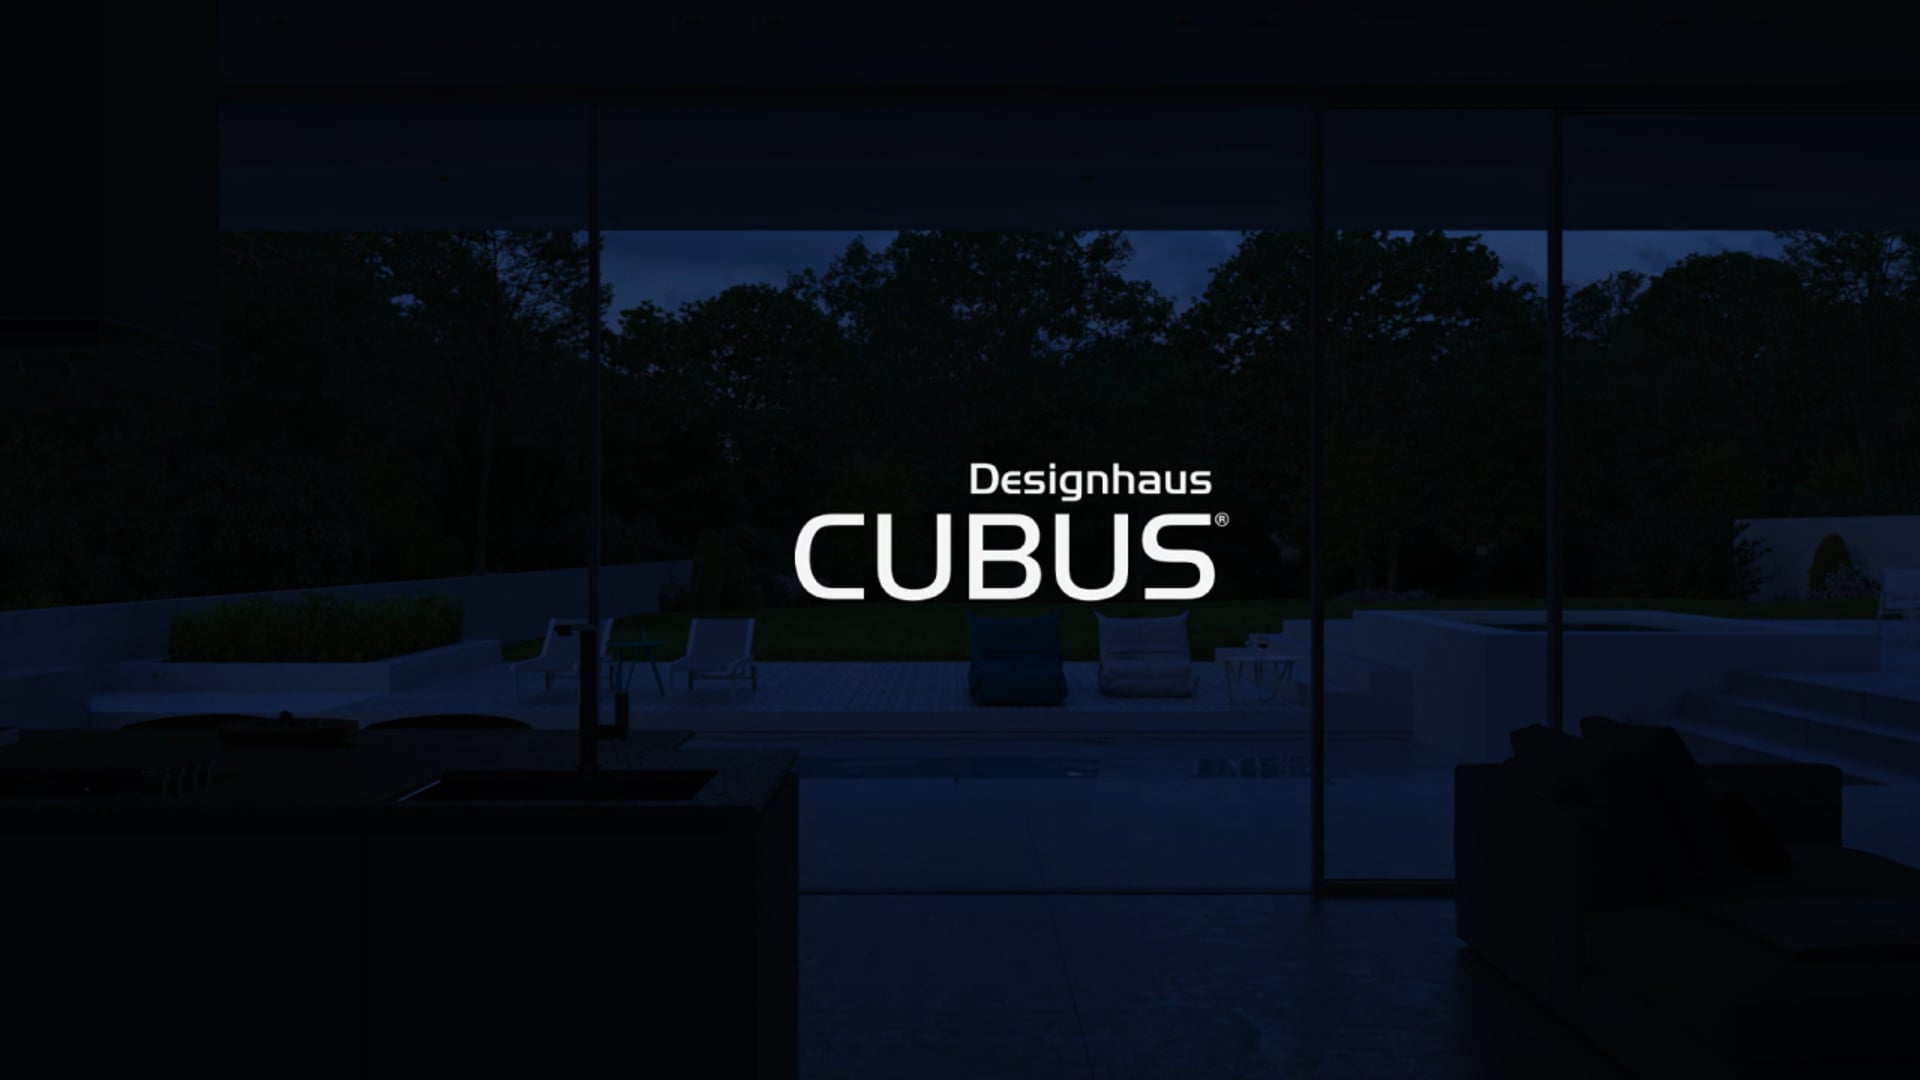 Cubus Designhaus